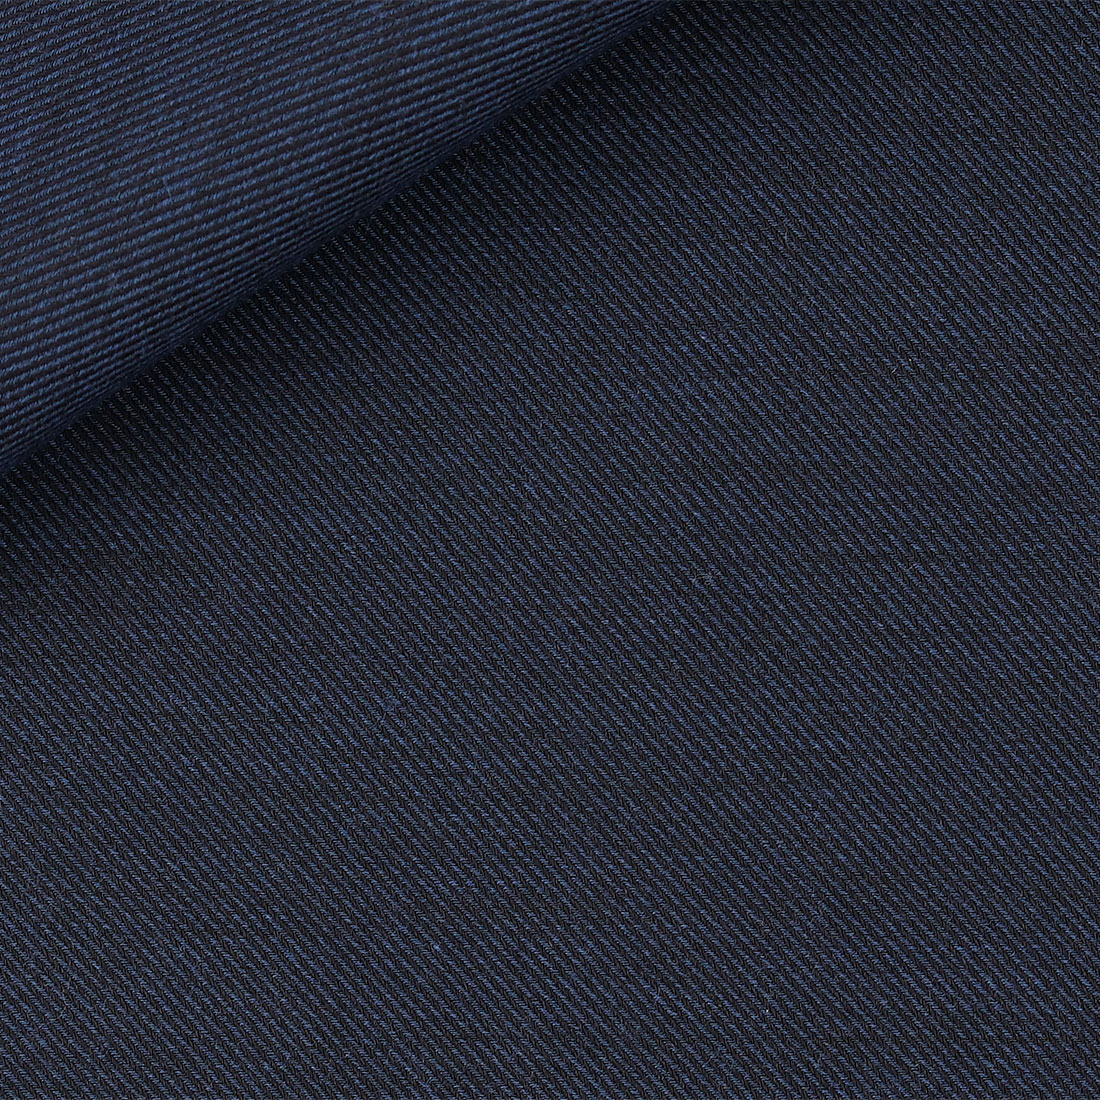 Tessuto tinta unita blu notte per camicie uomo invernali e autunnali